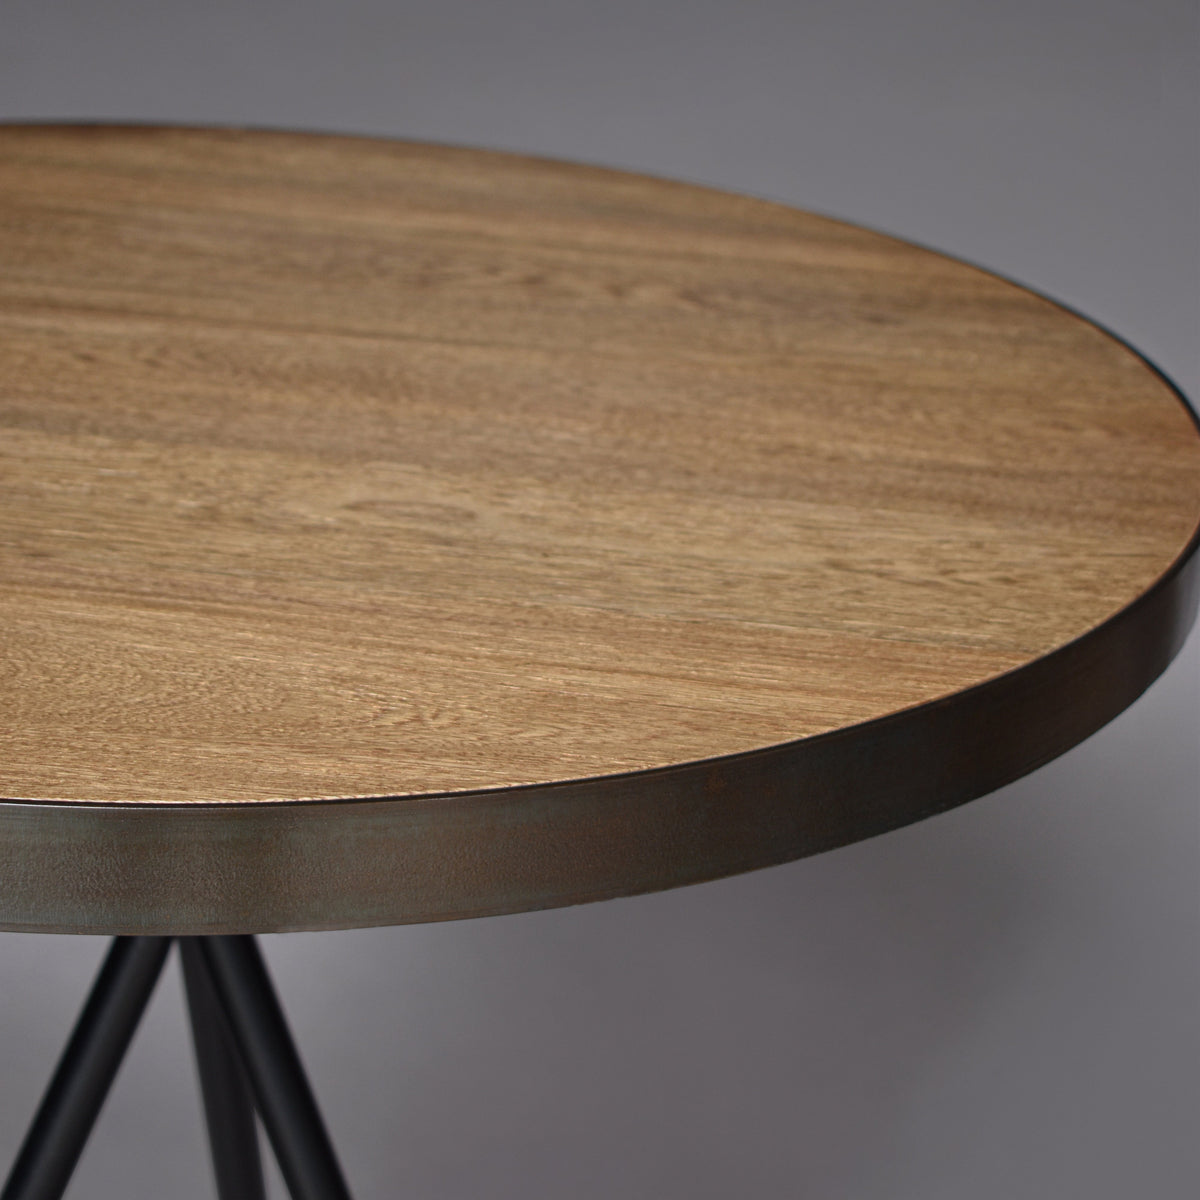  Queen.Y Tablero de madera para mesa, 15.7 x 1.7 pulgadas,  madera de roble macizo, repuesto para mesa de comedor, bar, mesa auxiliar,  mesa auxiliar redonda de madera, marrón : Hogar y